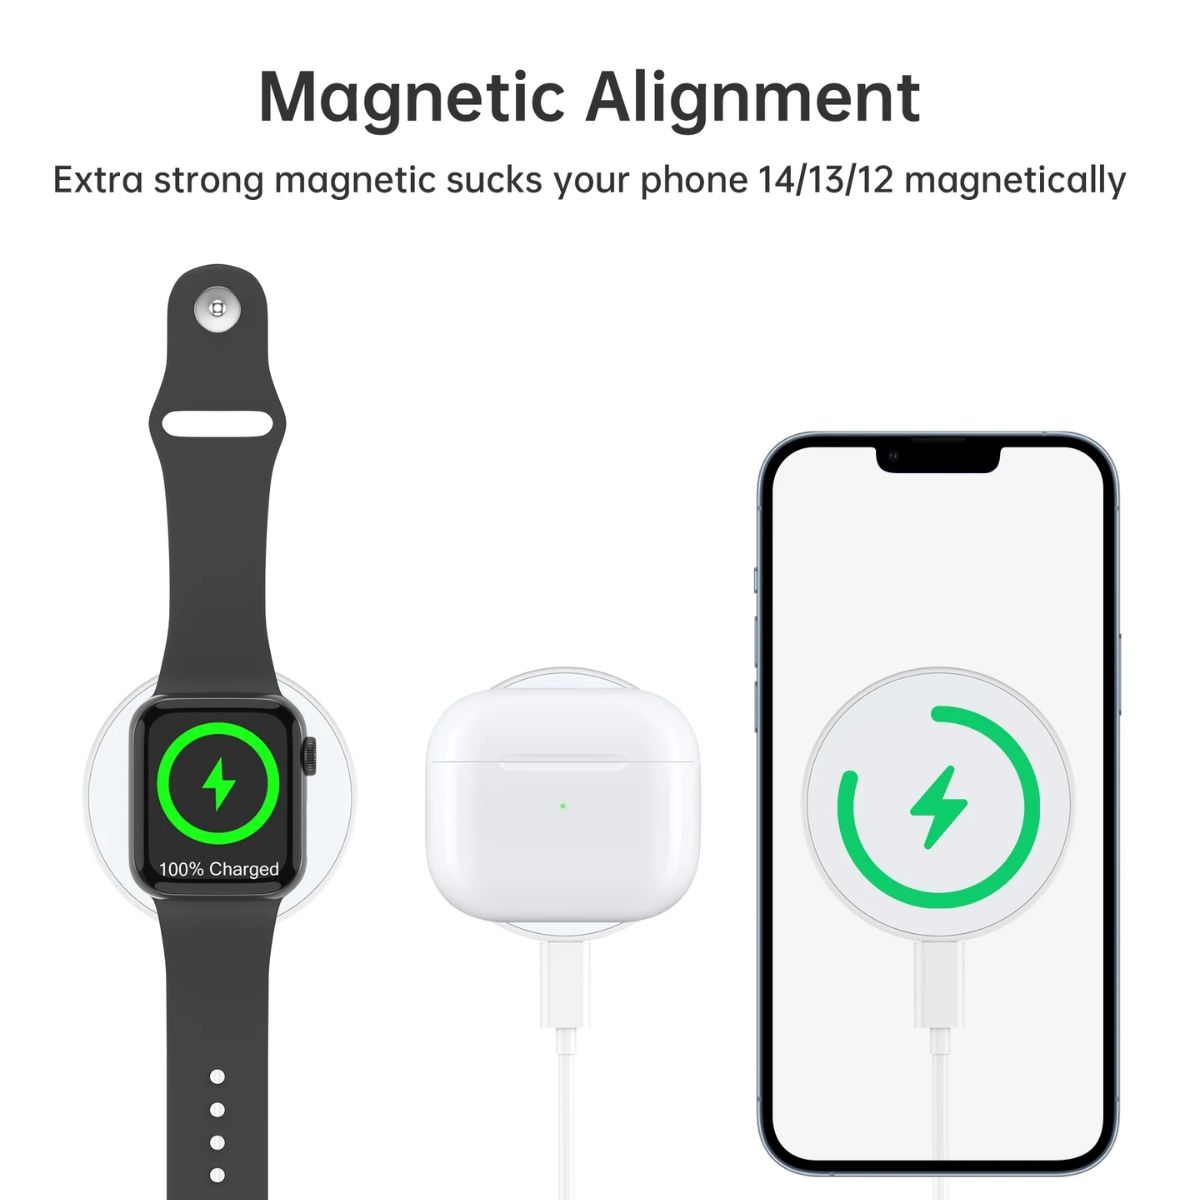 Nhẫn đỡ điện thoại mag-safe 2 in 1 tích hợp sạc không dây Choetech T603 dùng cho iphone, tai nghe và cho apple watch (Hàng chính hãng)